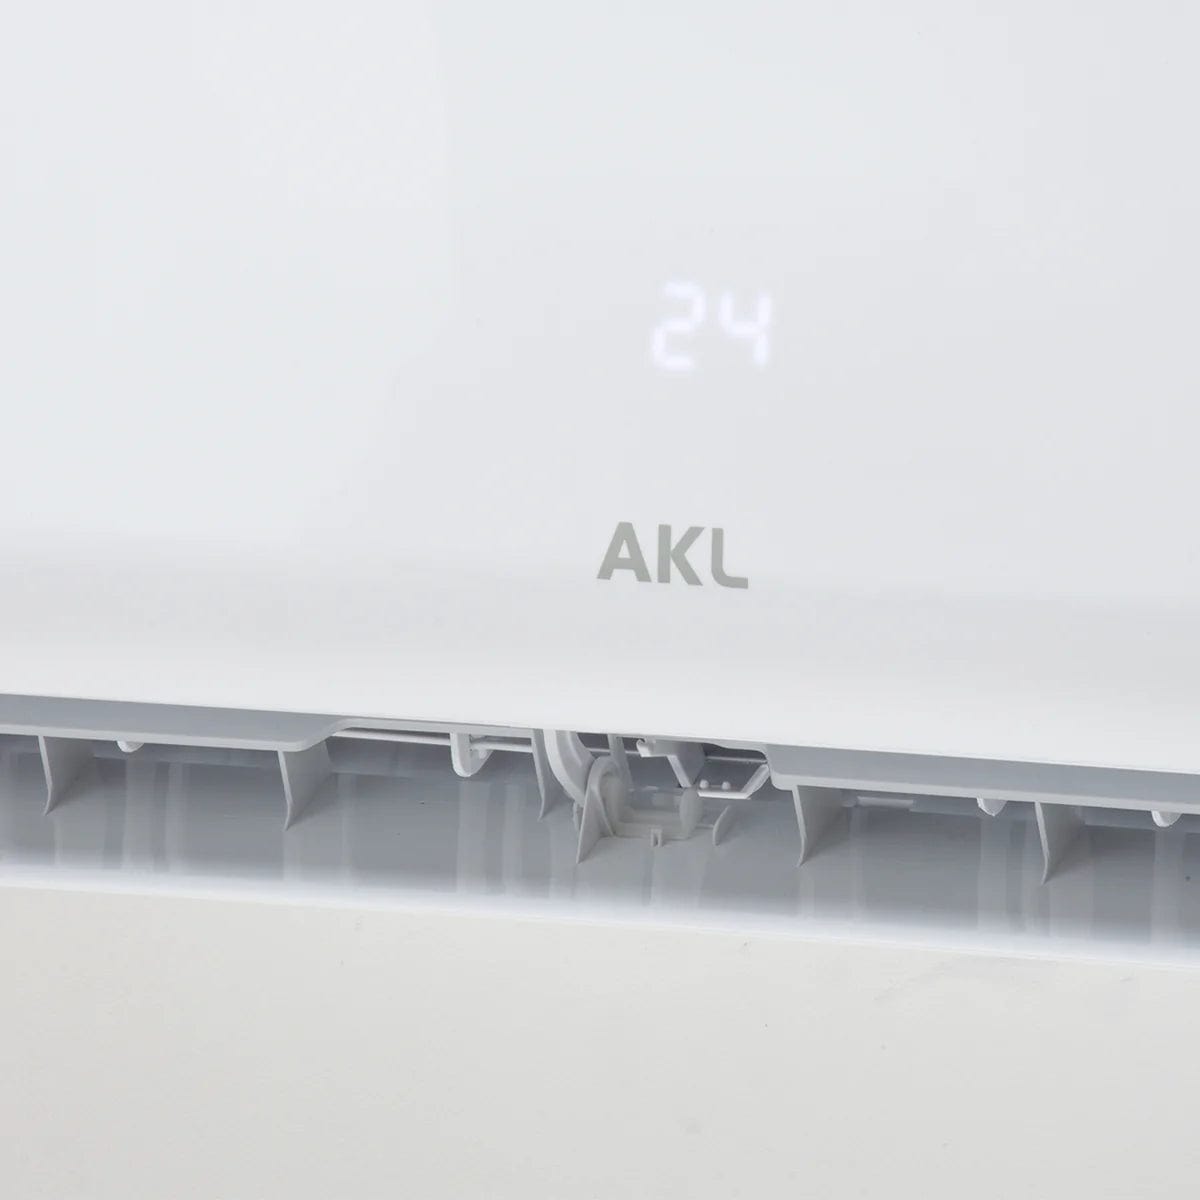 Aire Acondicionado AKL INVERTER 9.000 BTU, WIFI, Cold Plasma Generator | Cubre hasta 16m2 - Iceberg Refrigeración & Ventilación